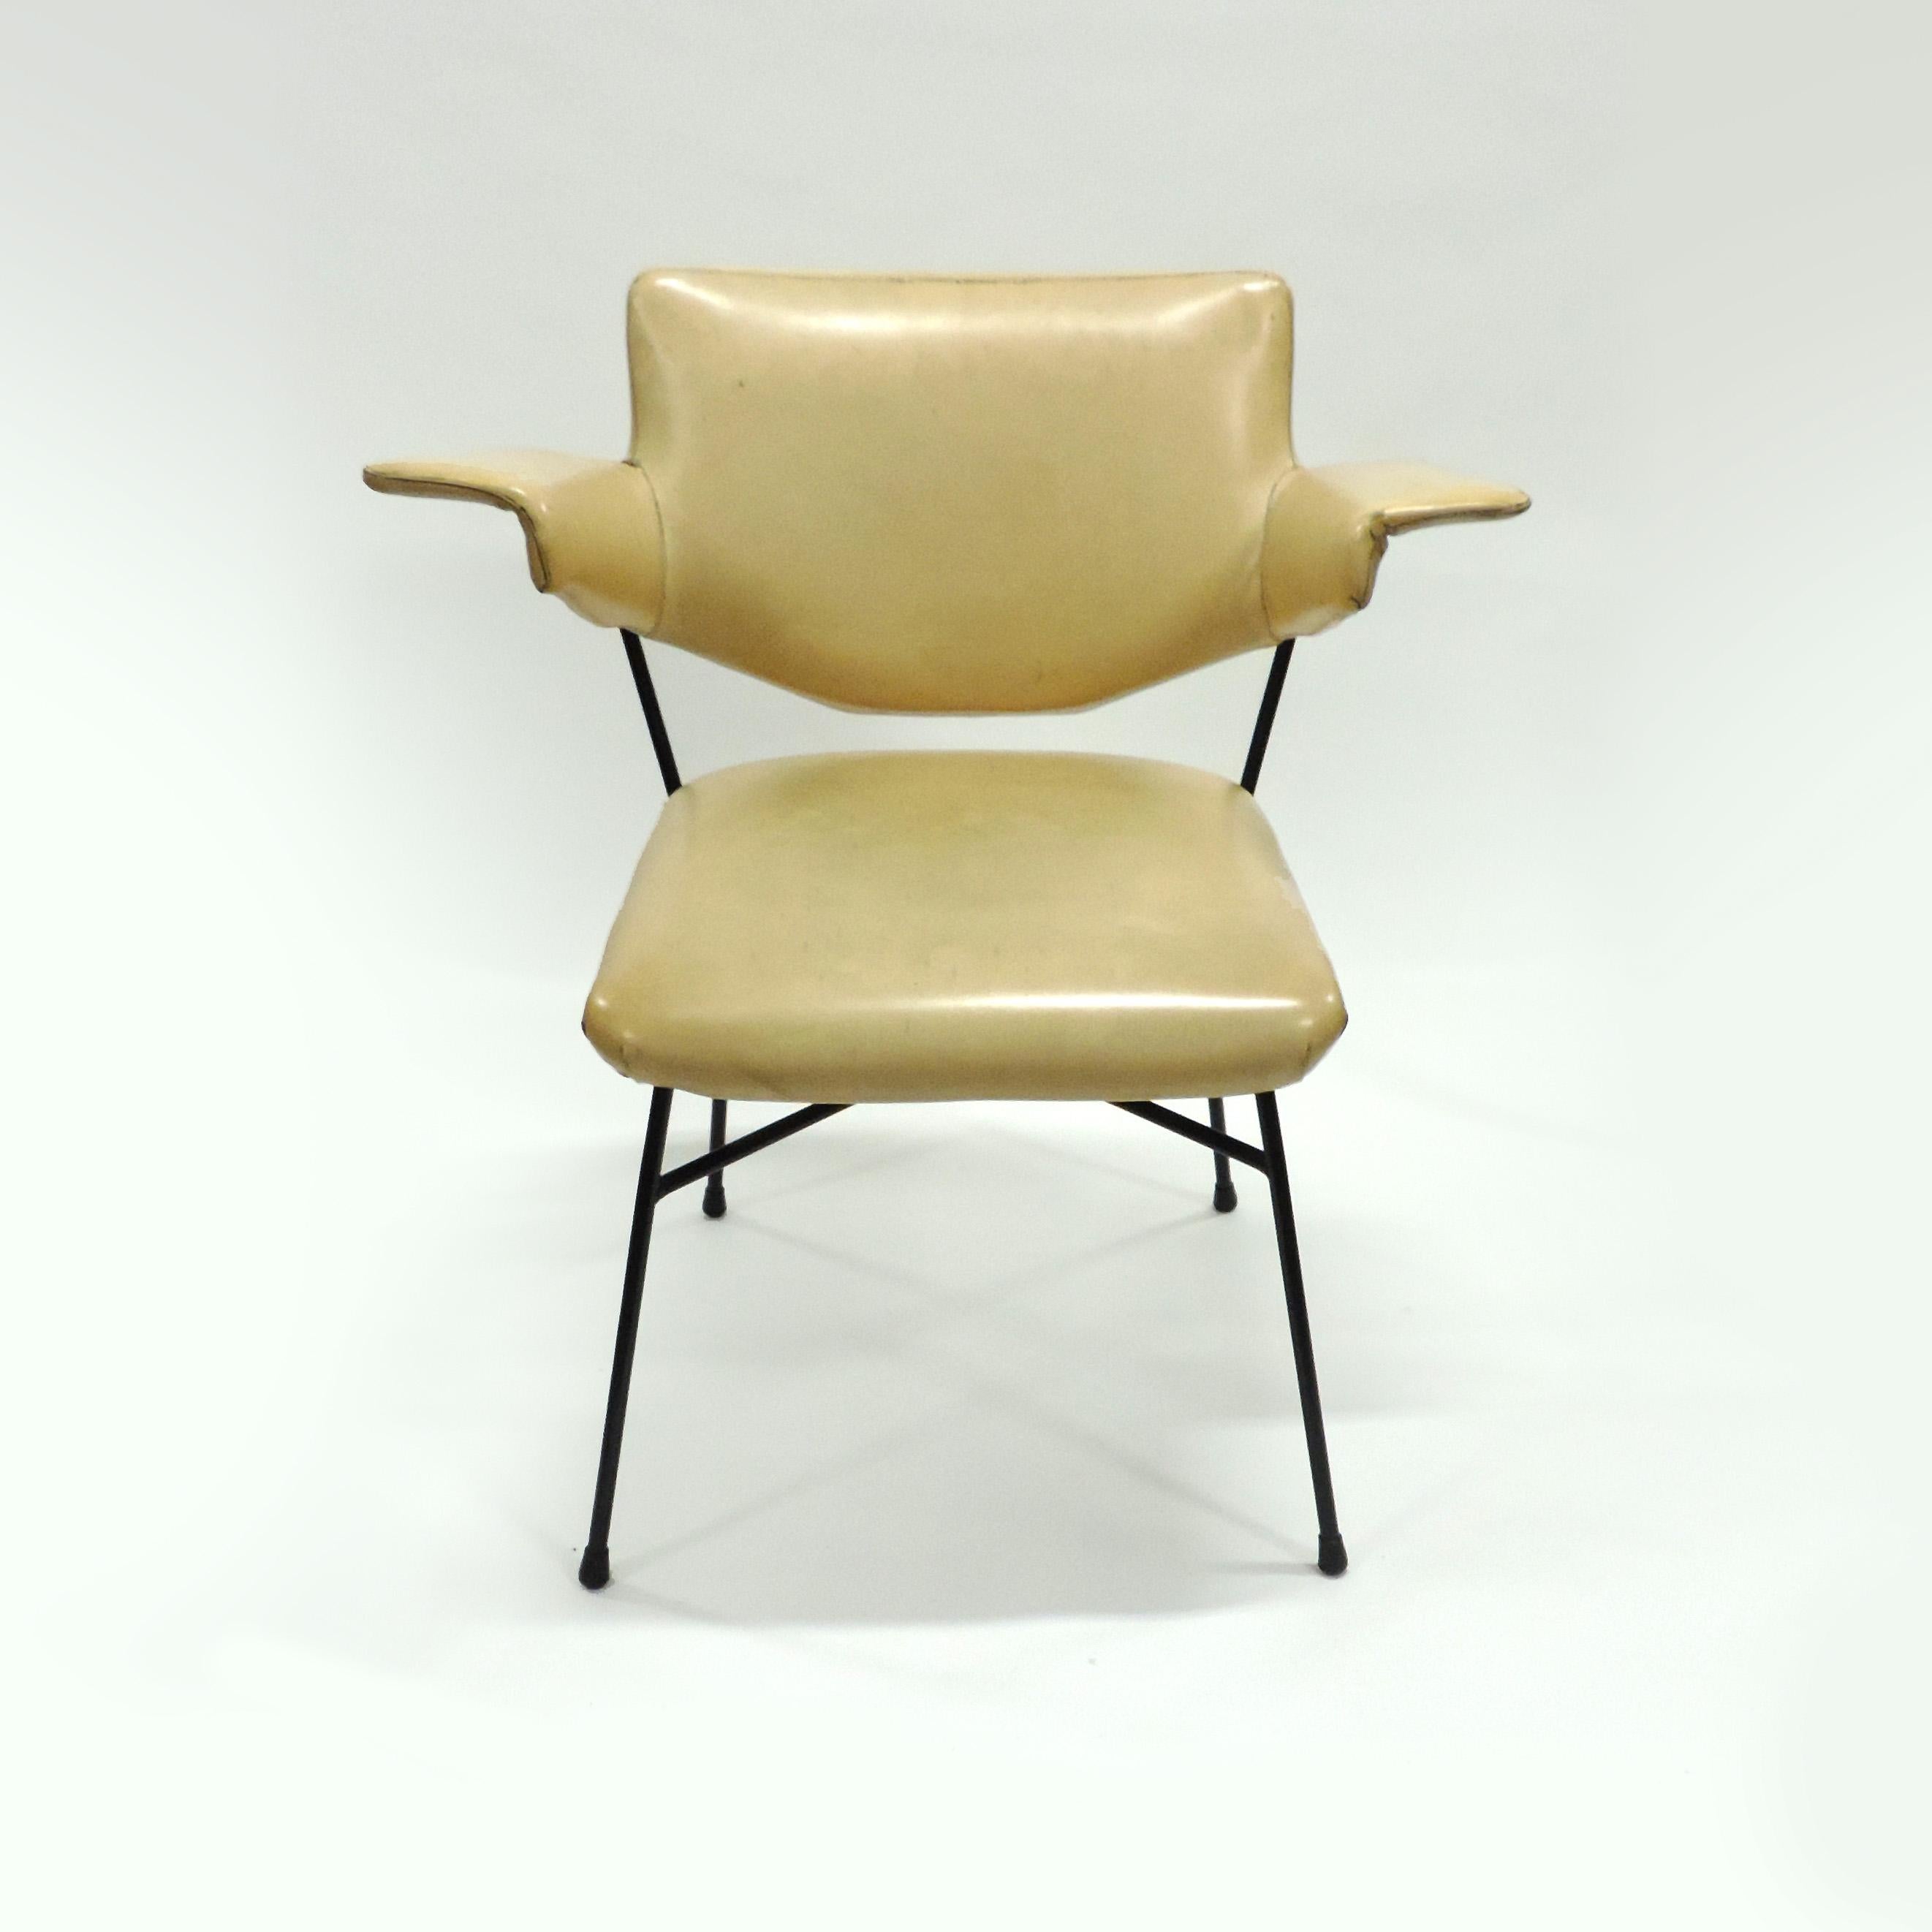 Studio BBPR Urania Sessel für Arflex, Italien, 1954 (Lackiert) im Angebot